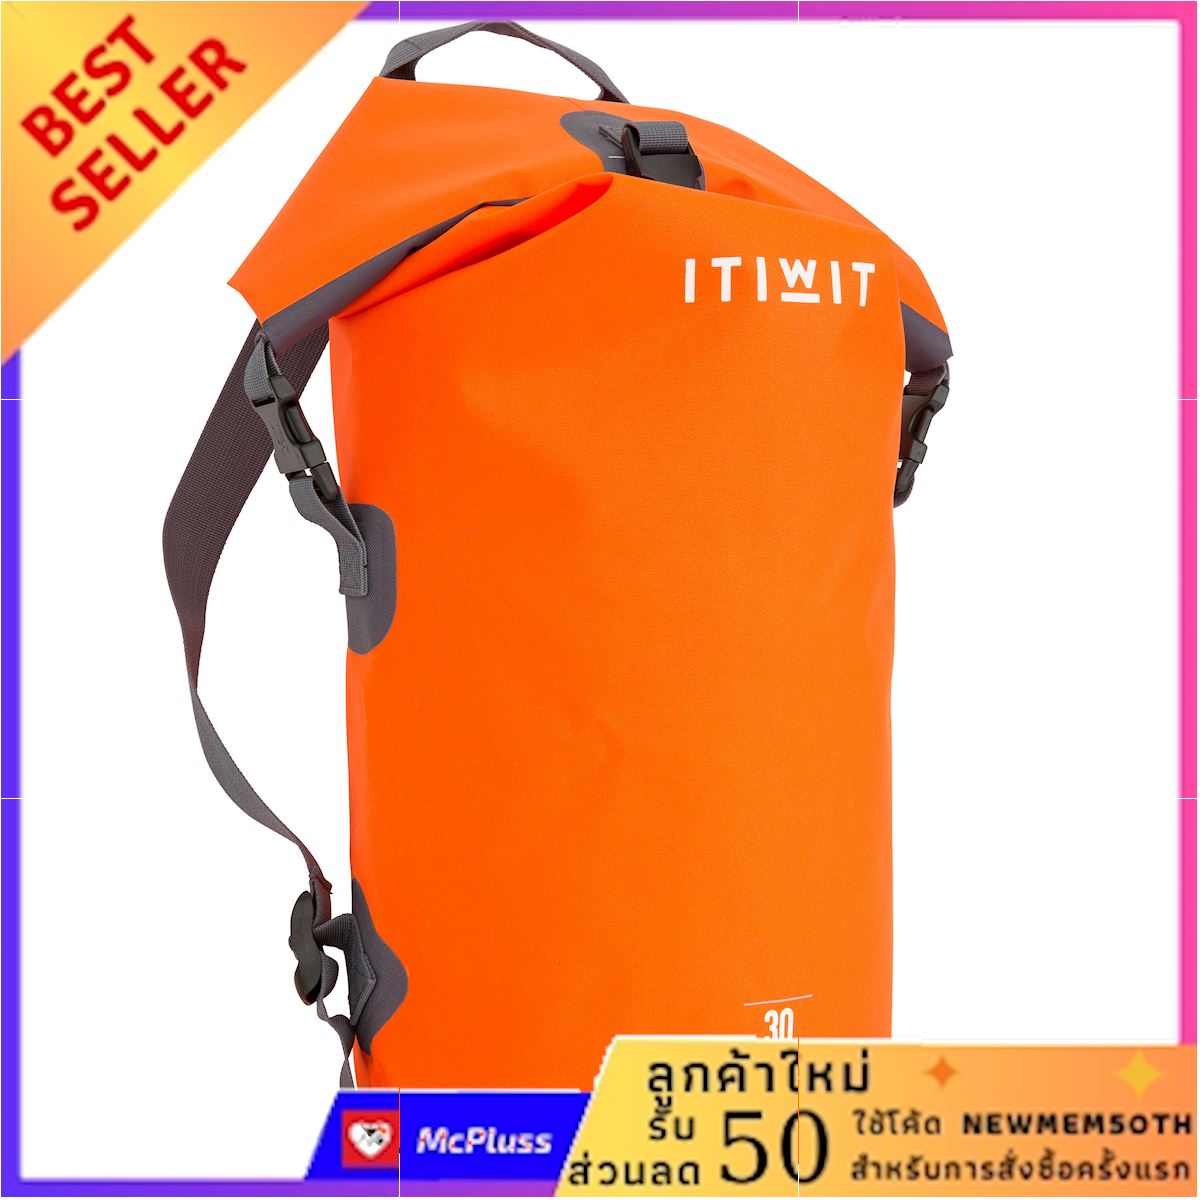 กระเป๋าดัฟเฟิลกันน้ำ 30 ลิตร (สีส้ม) พร้อมส่งของทันที ลูกค้าใหม่ลด50บาทใช้โค้ด NEWMEM50TH